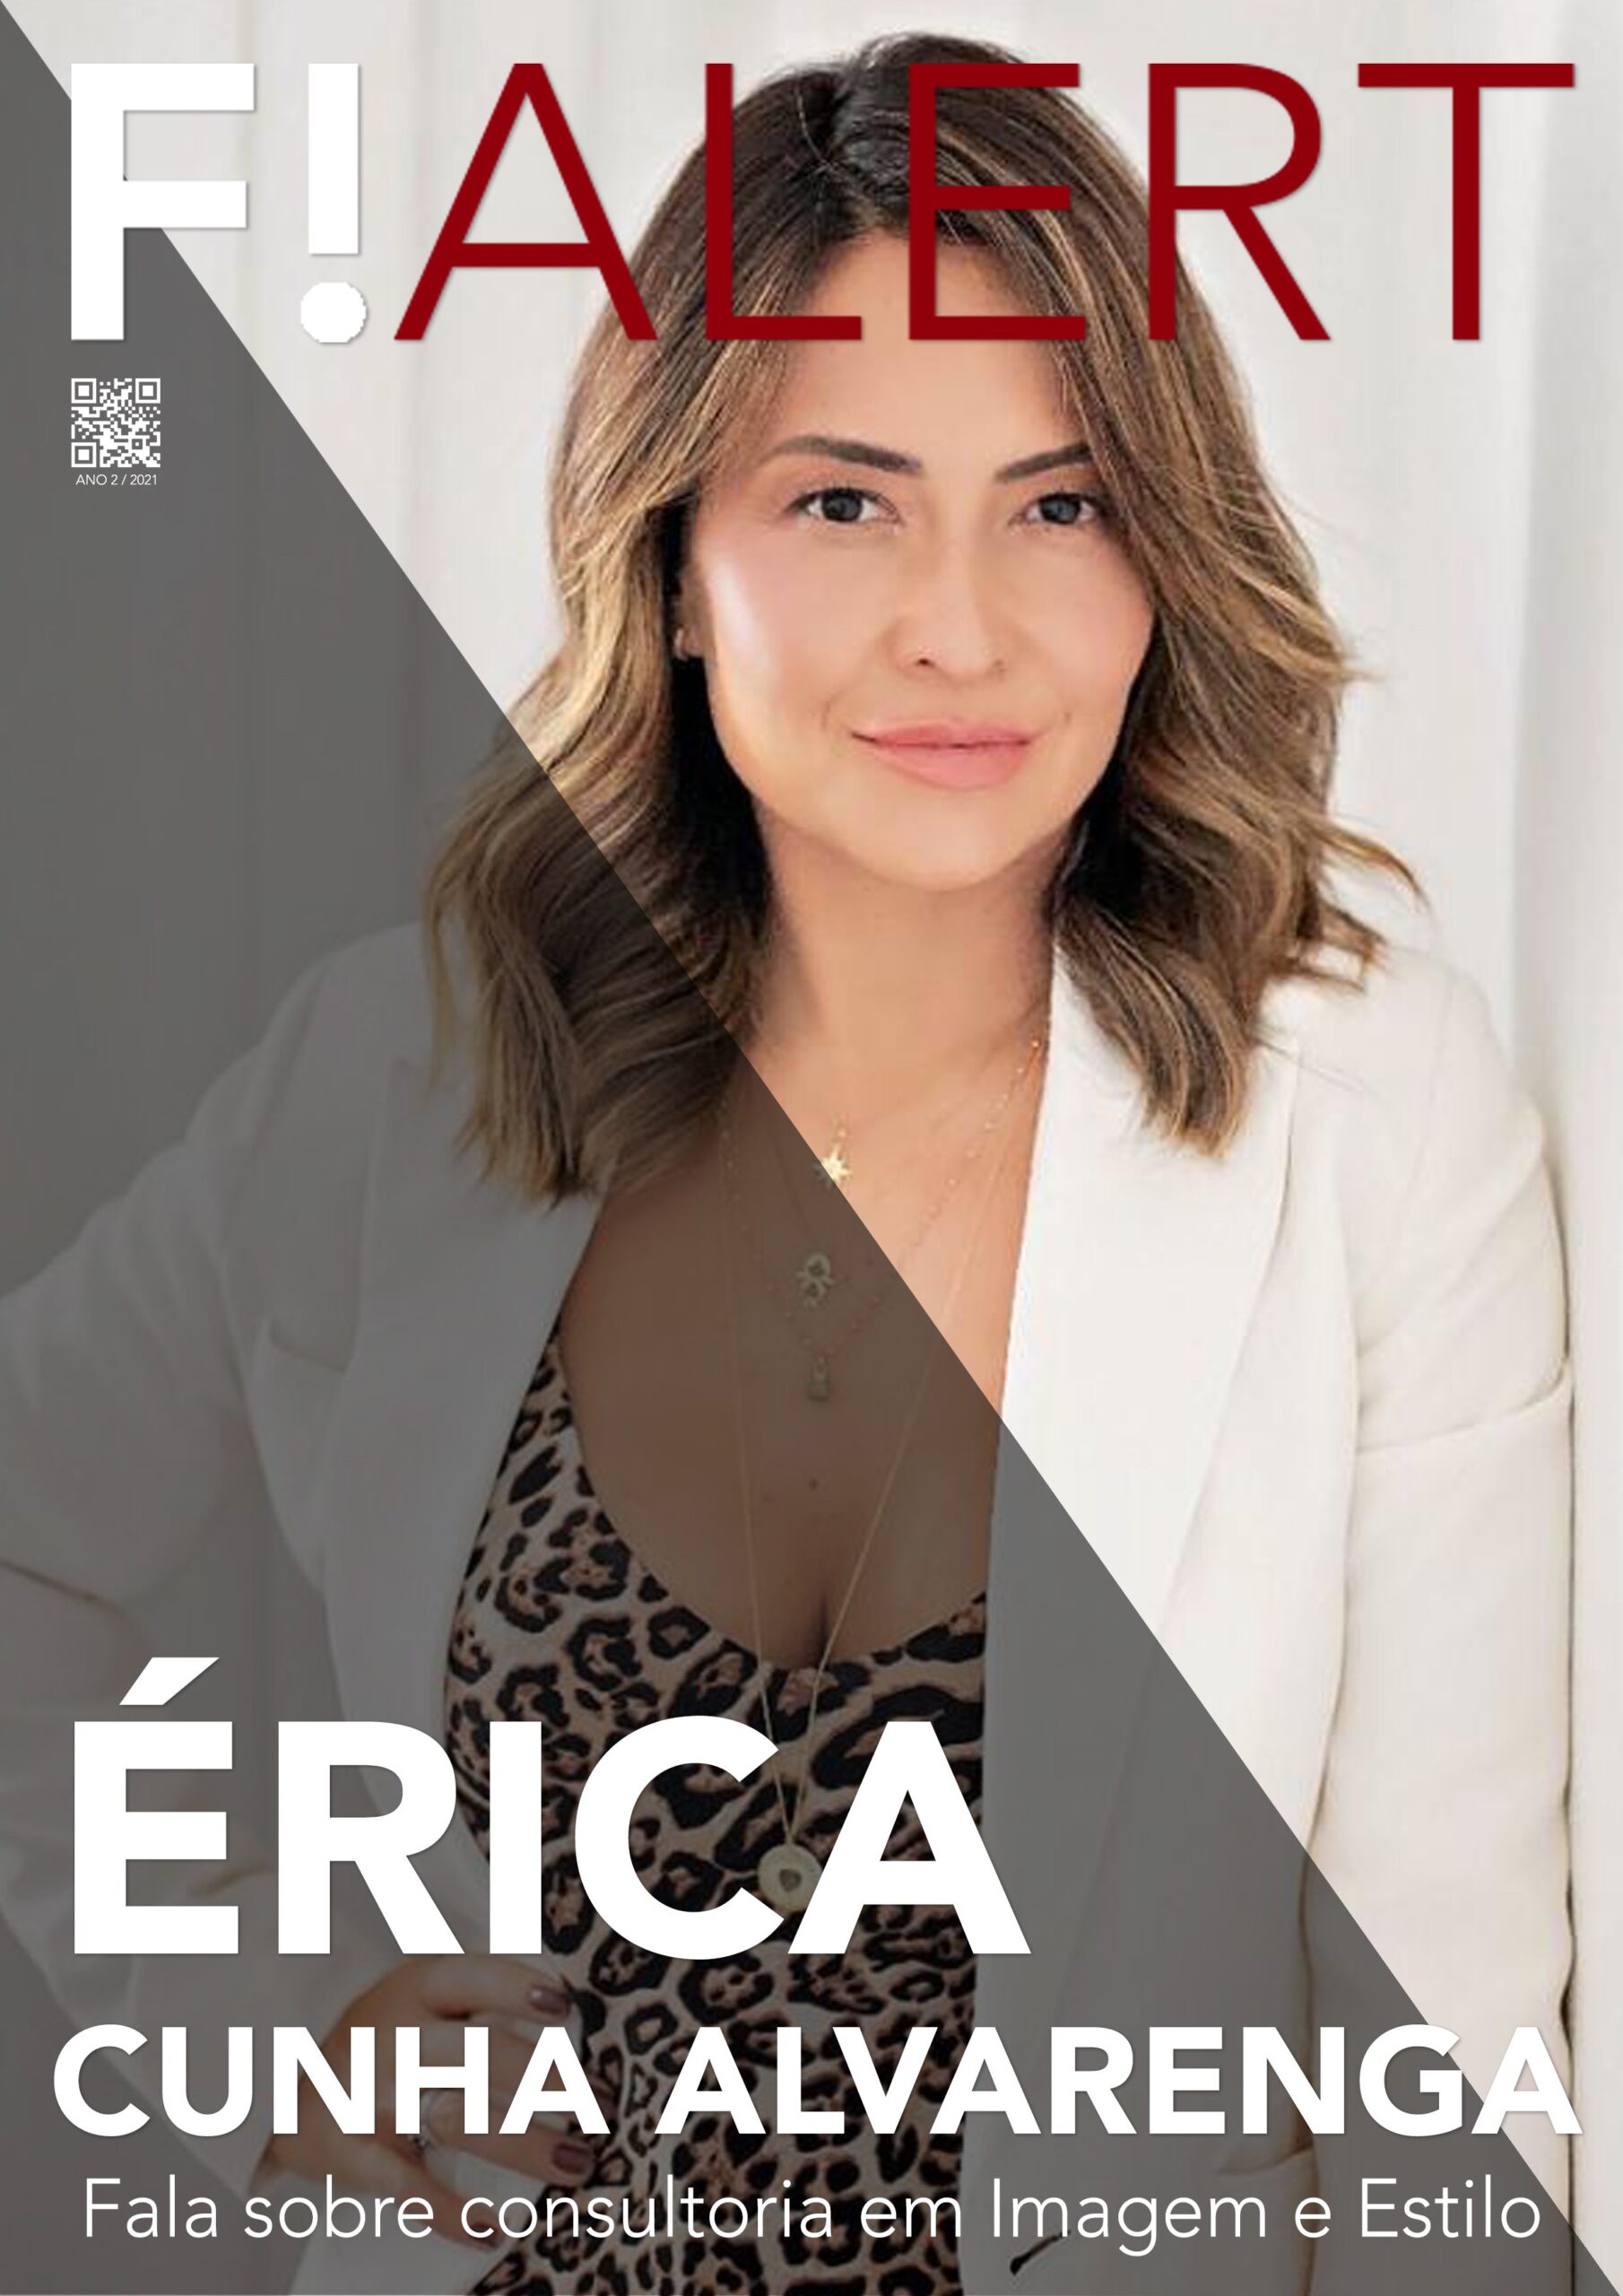 Erica Alvarenga